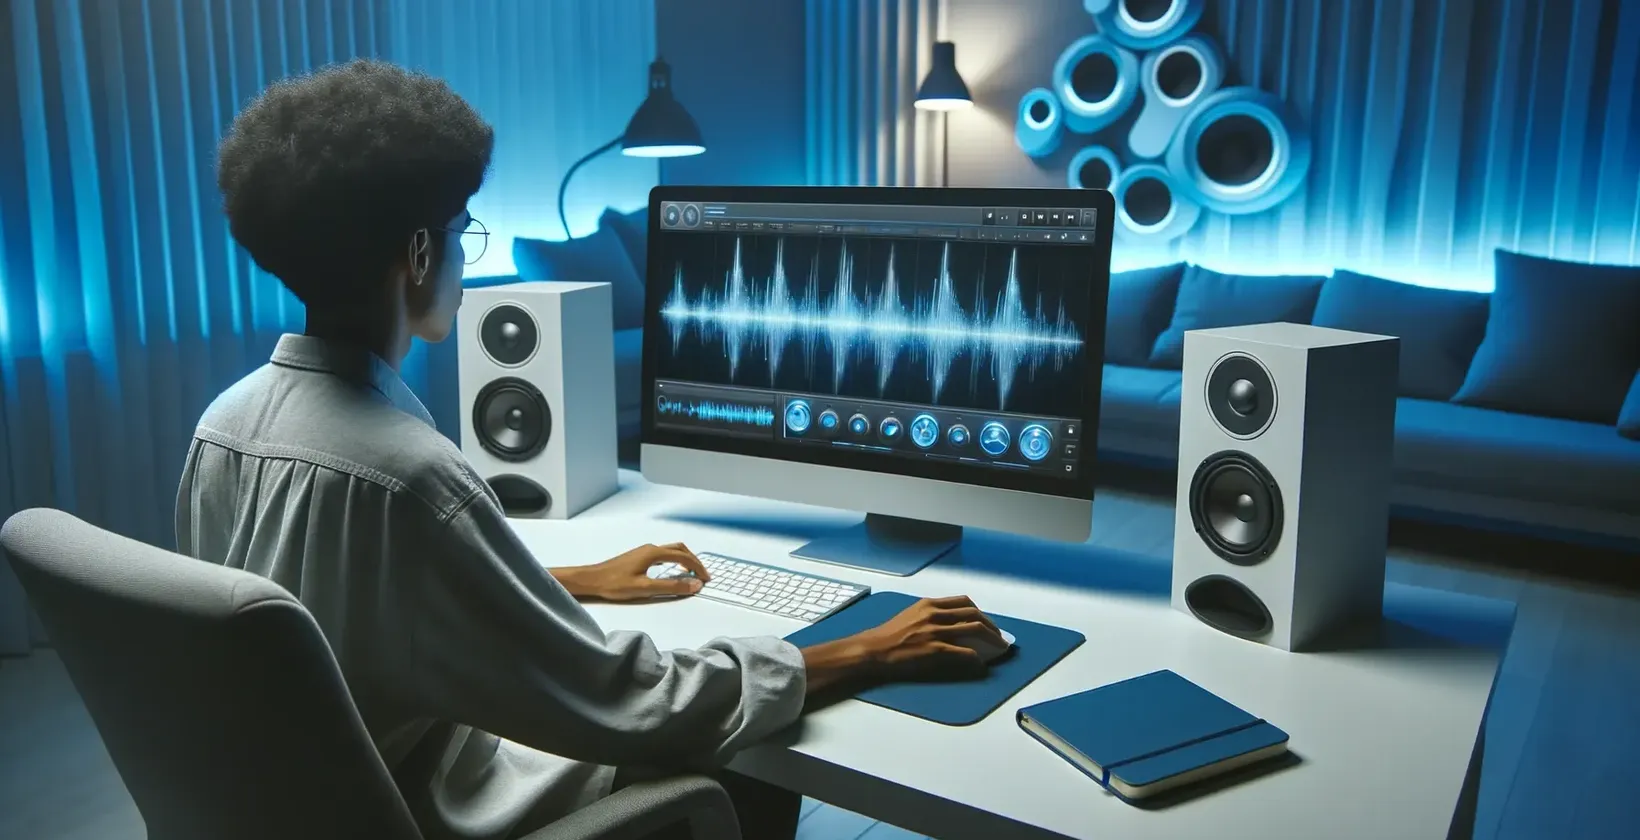 Osoba pracująca przy komputerze dodająca tekst do nakręconego wideo w nowoczesnym środowisku studyjnym z głośnikami